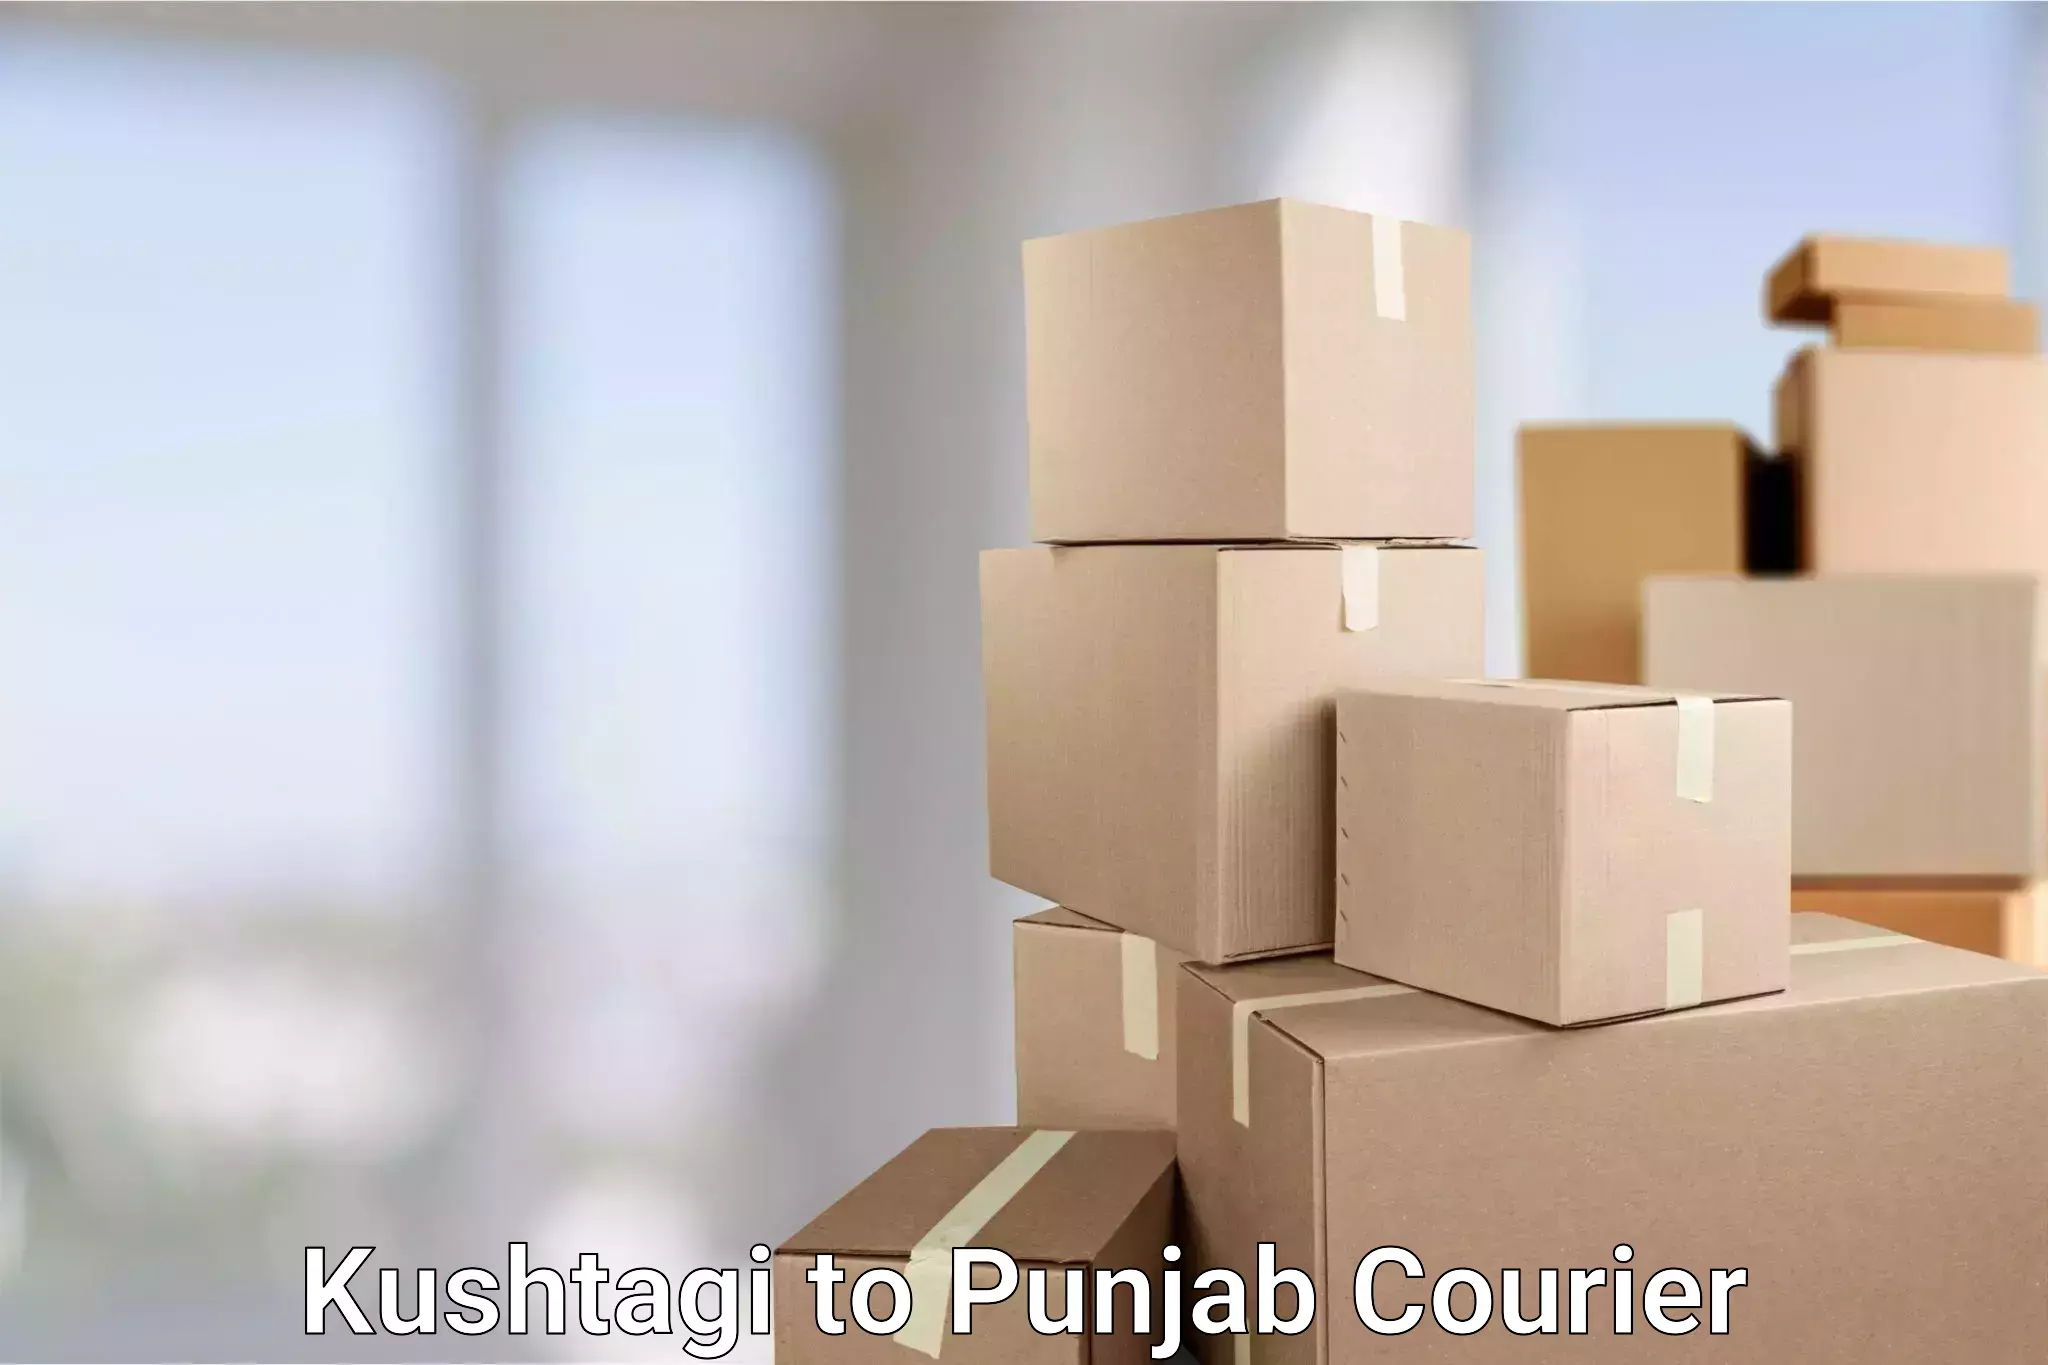 High-speed delivery Kushtagi to Punjab